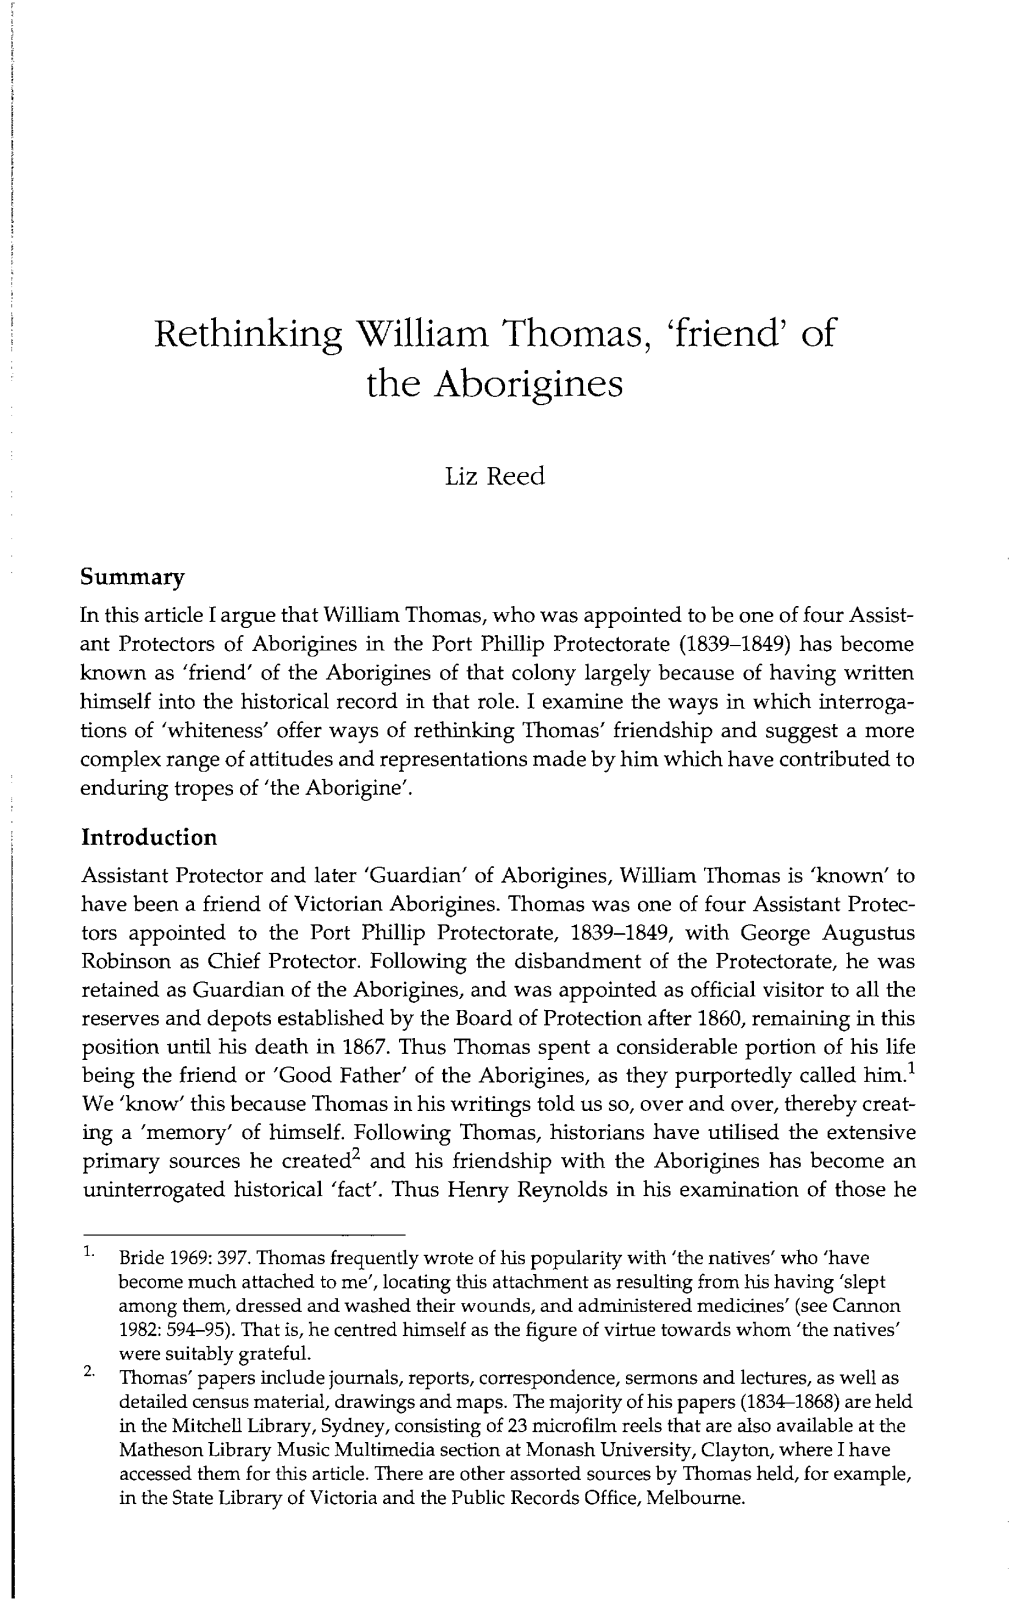 Rethinking William Thomas, 'Friend' of the Aborigines